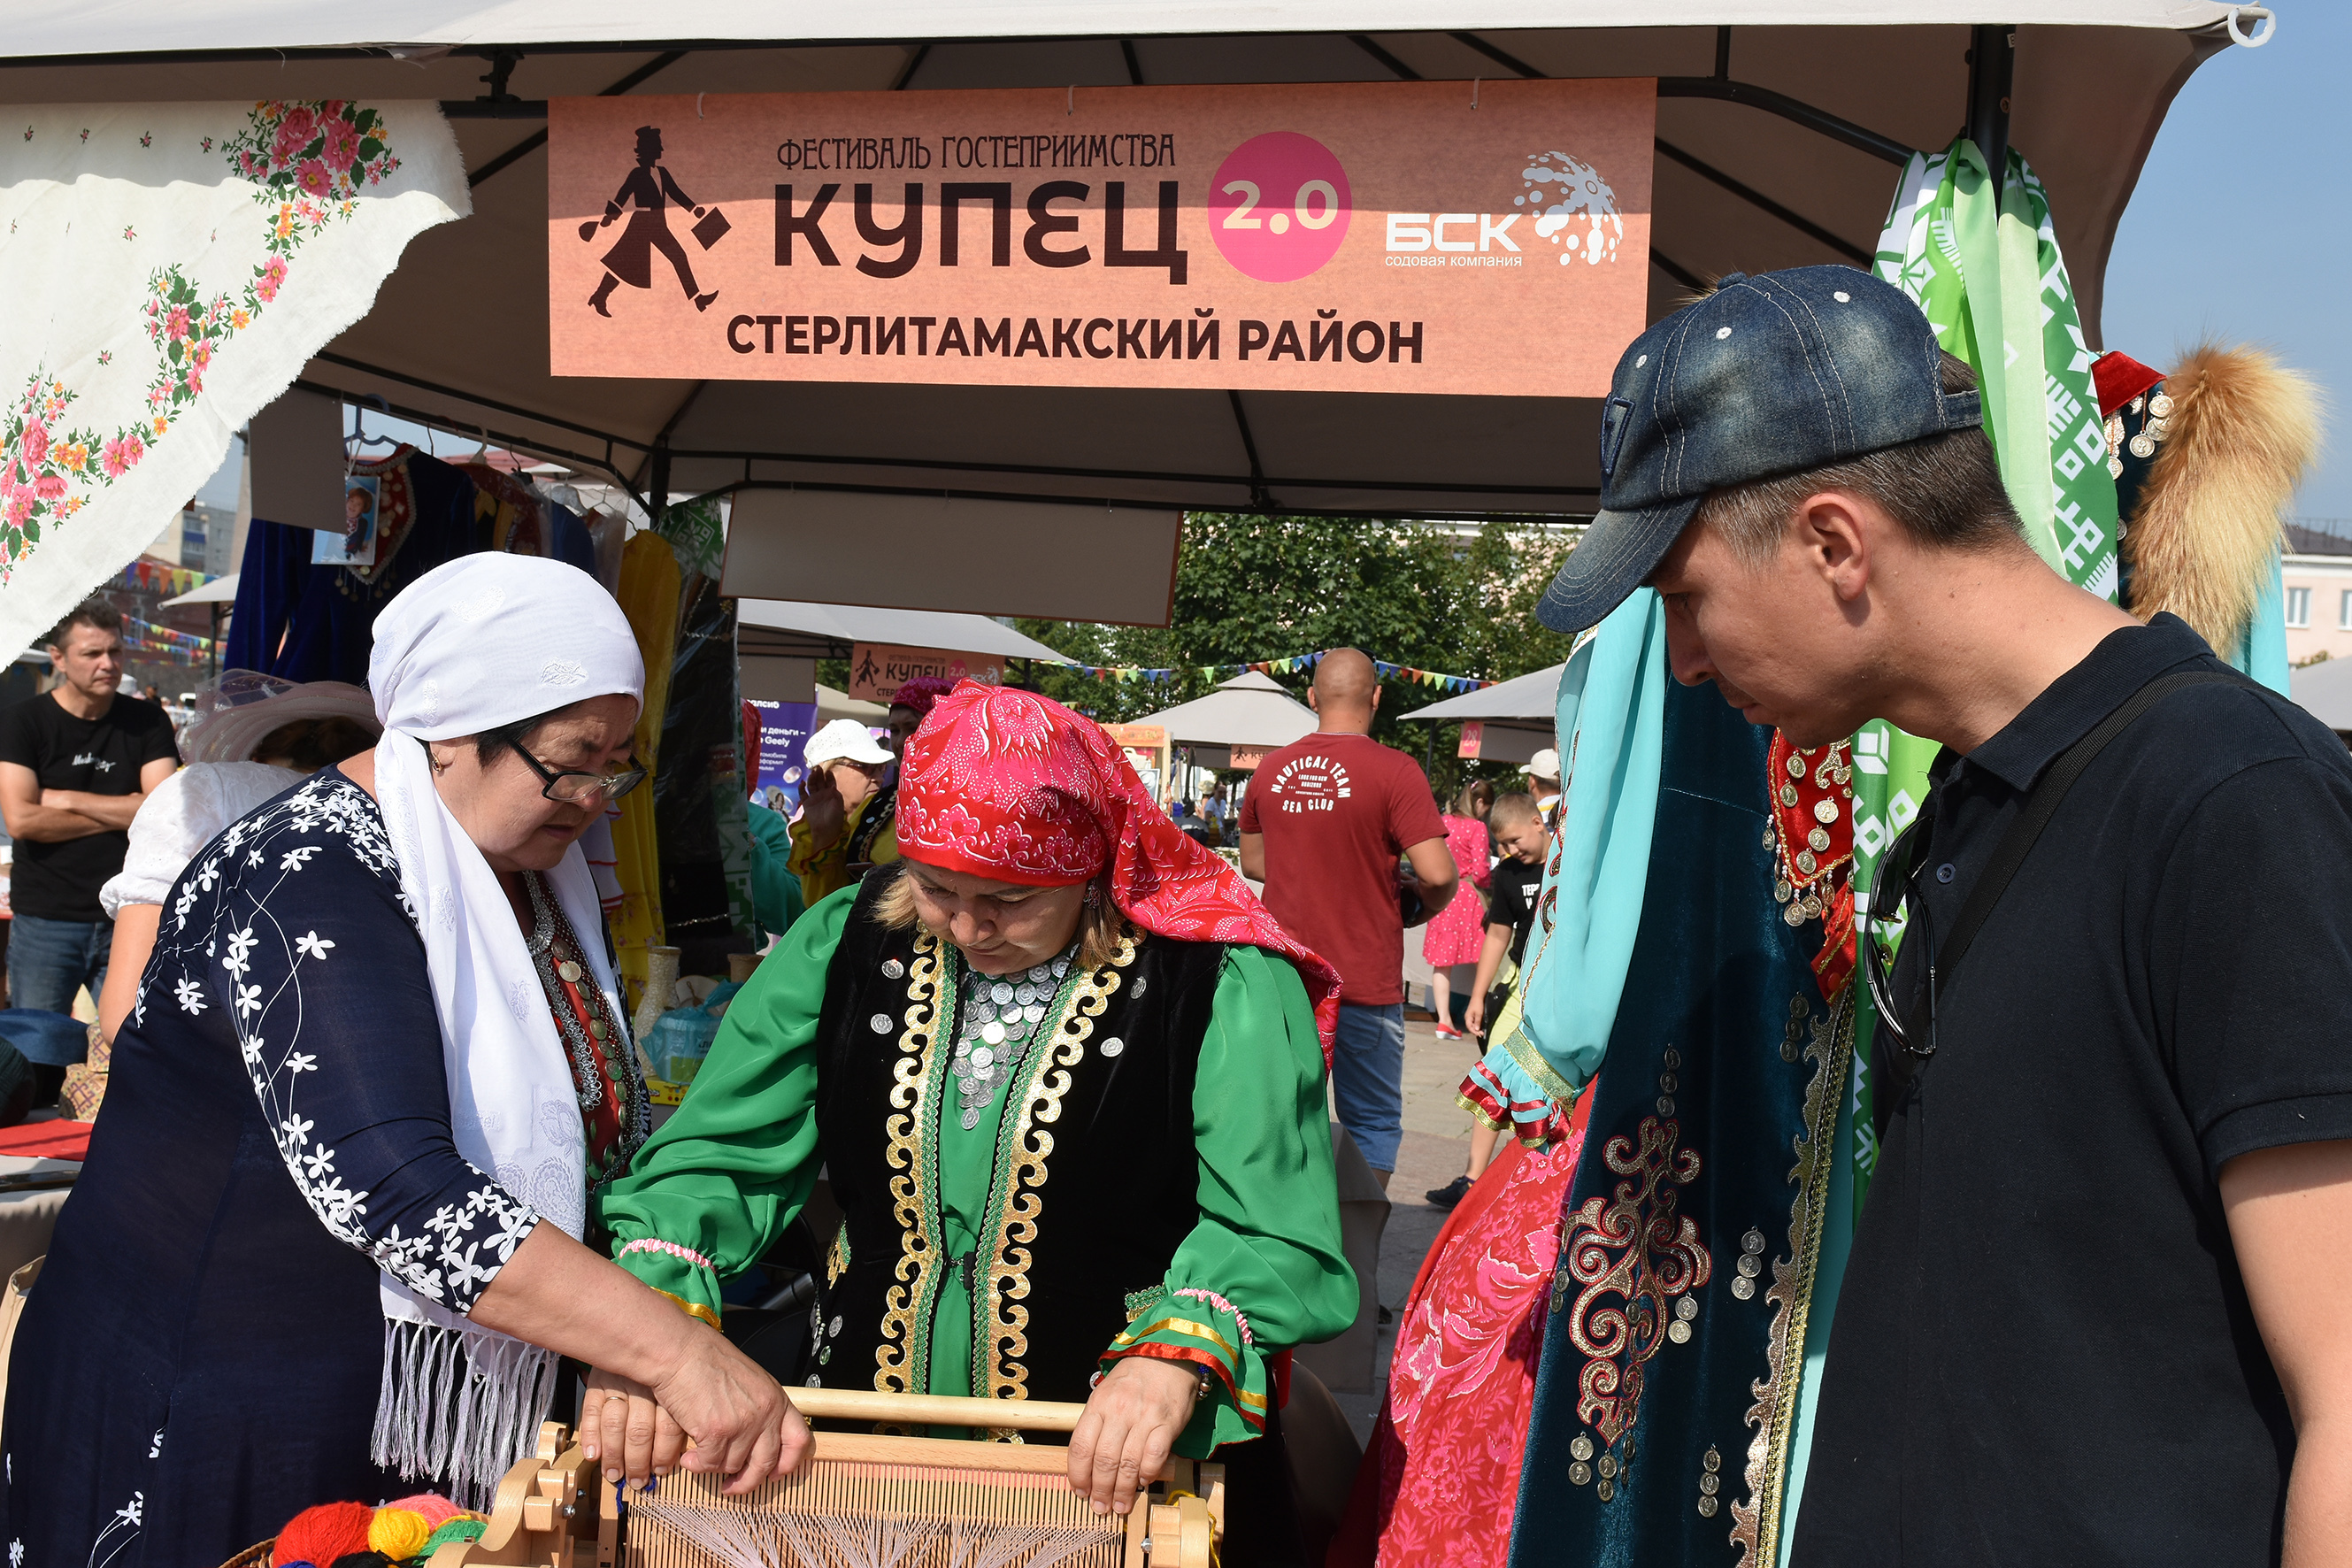 В Башкирии на фестивале гостеприимства «Купец 2.0» его посетители закупились на 9 млн рублей